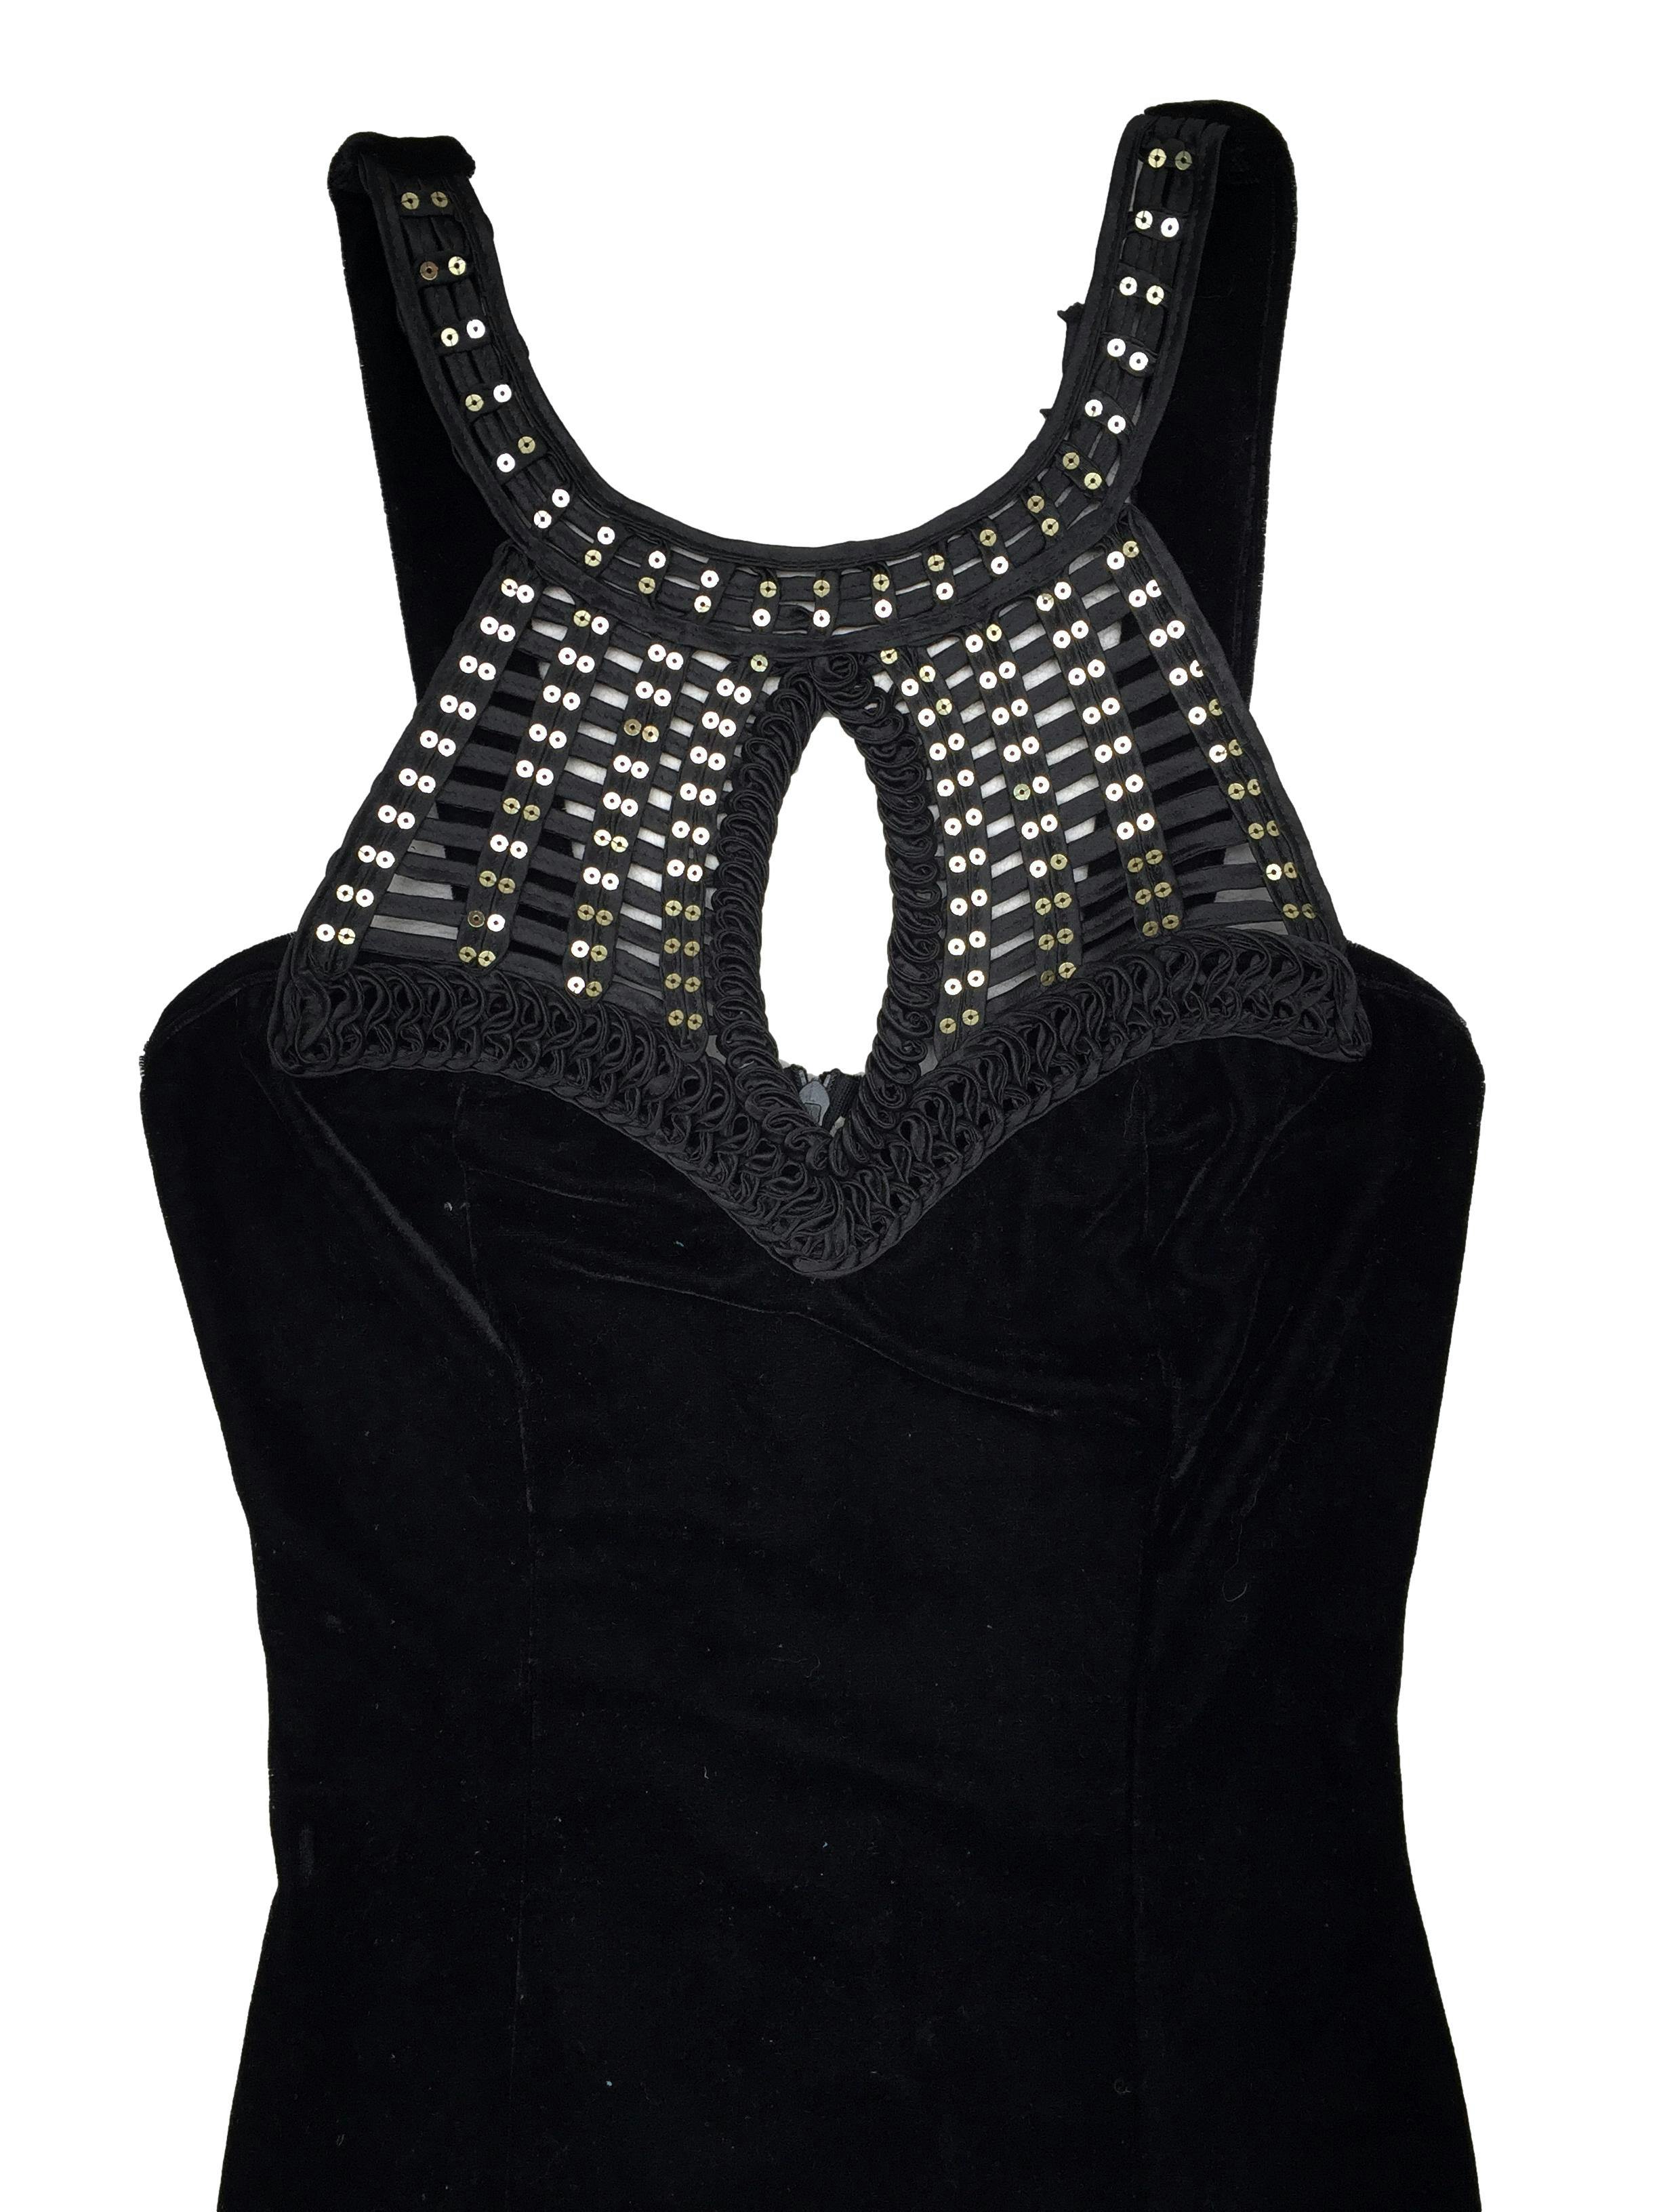 Vestido de plush negro con aplicaciones de lentejuelas sobre textura trenzada, abertura en el pecho y elástico en la espalda. Busto 72cm, Largo 89cm